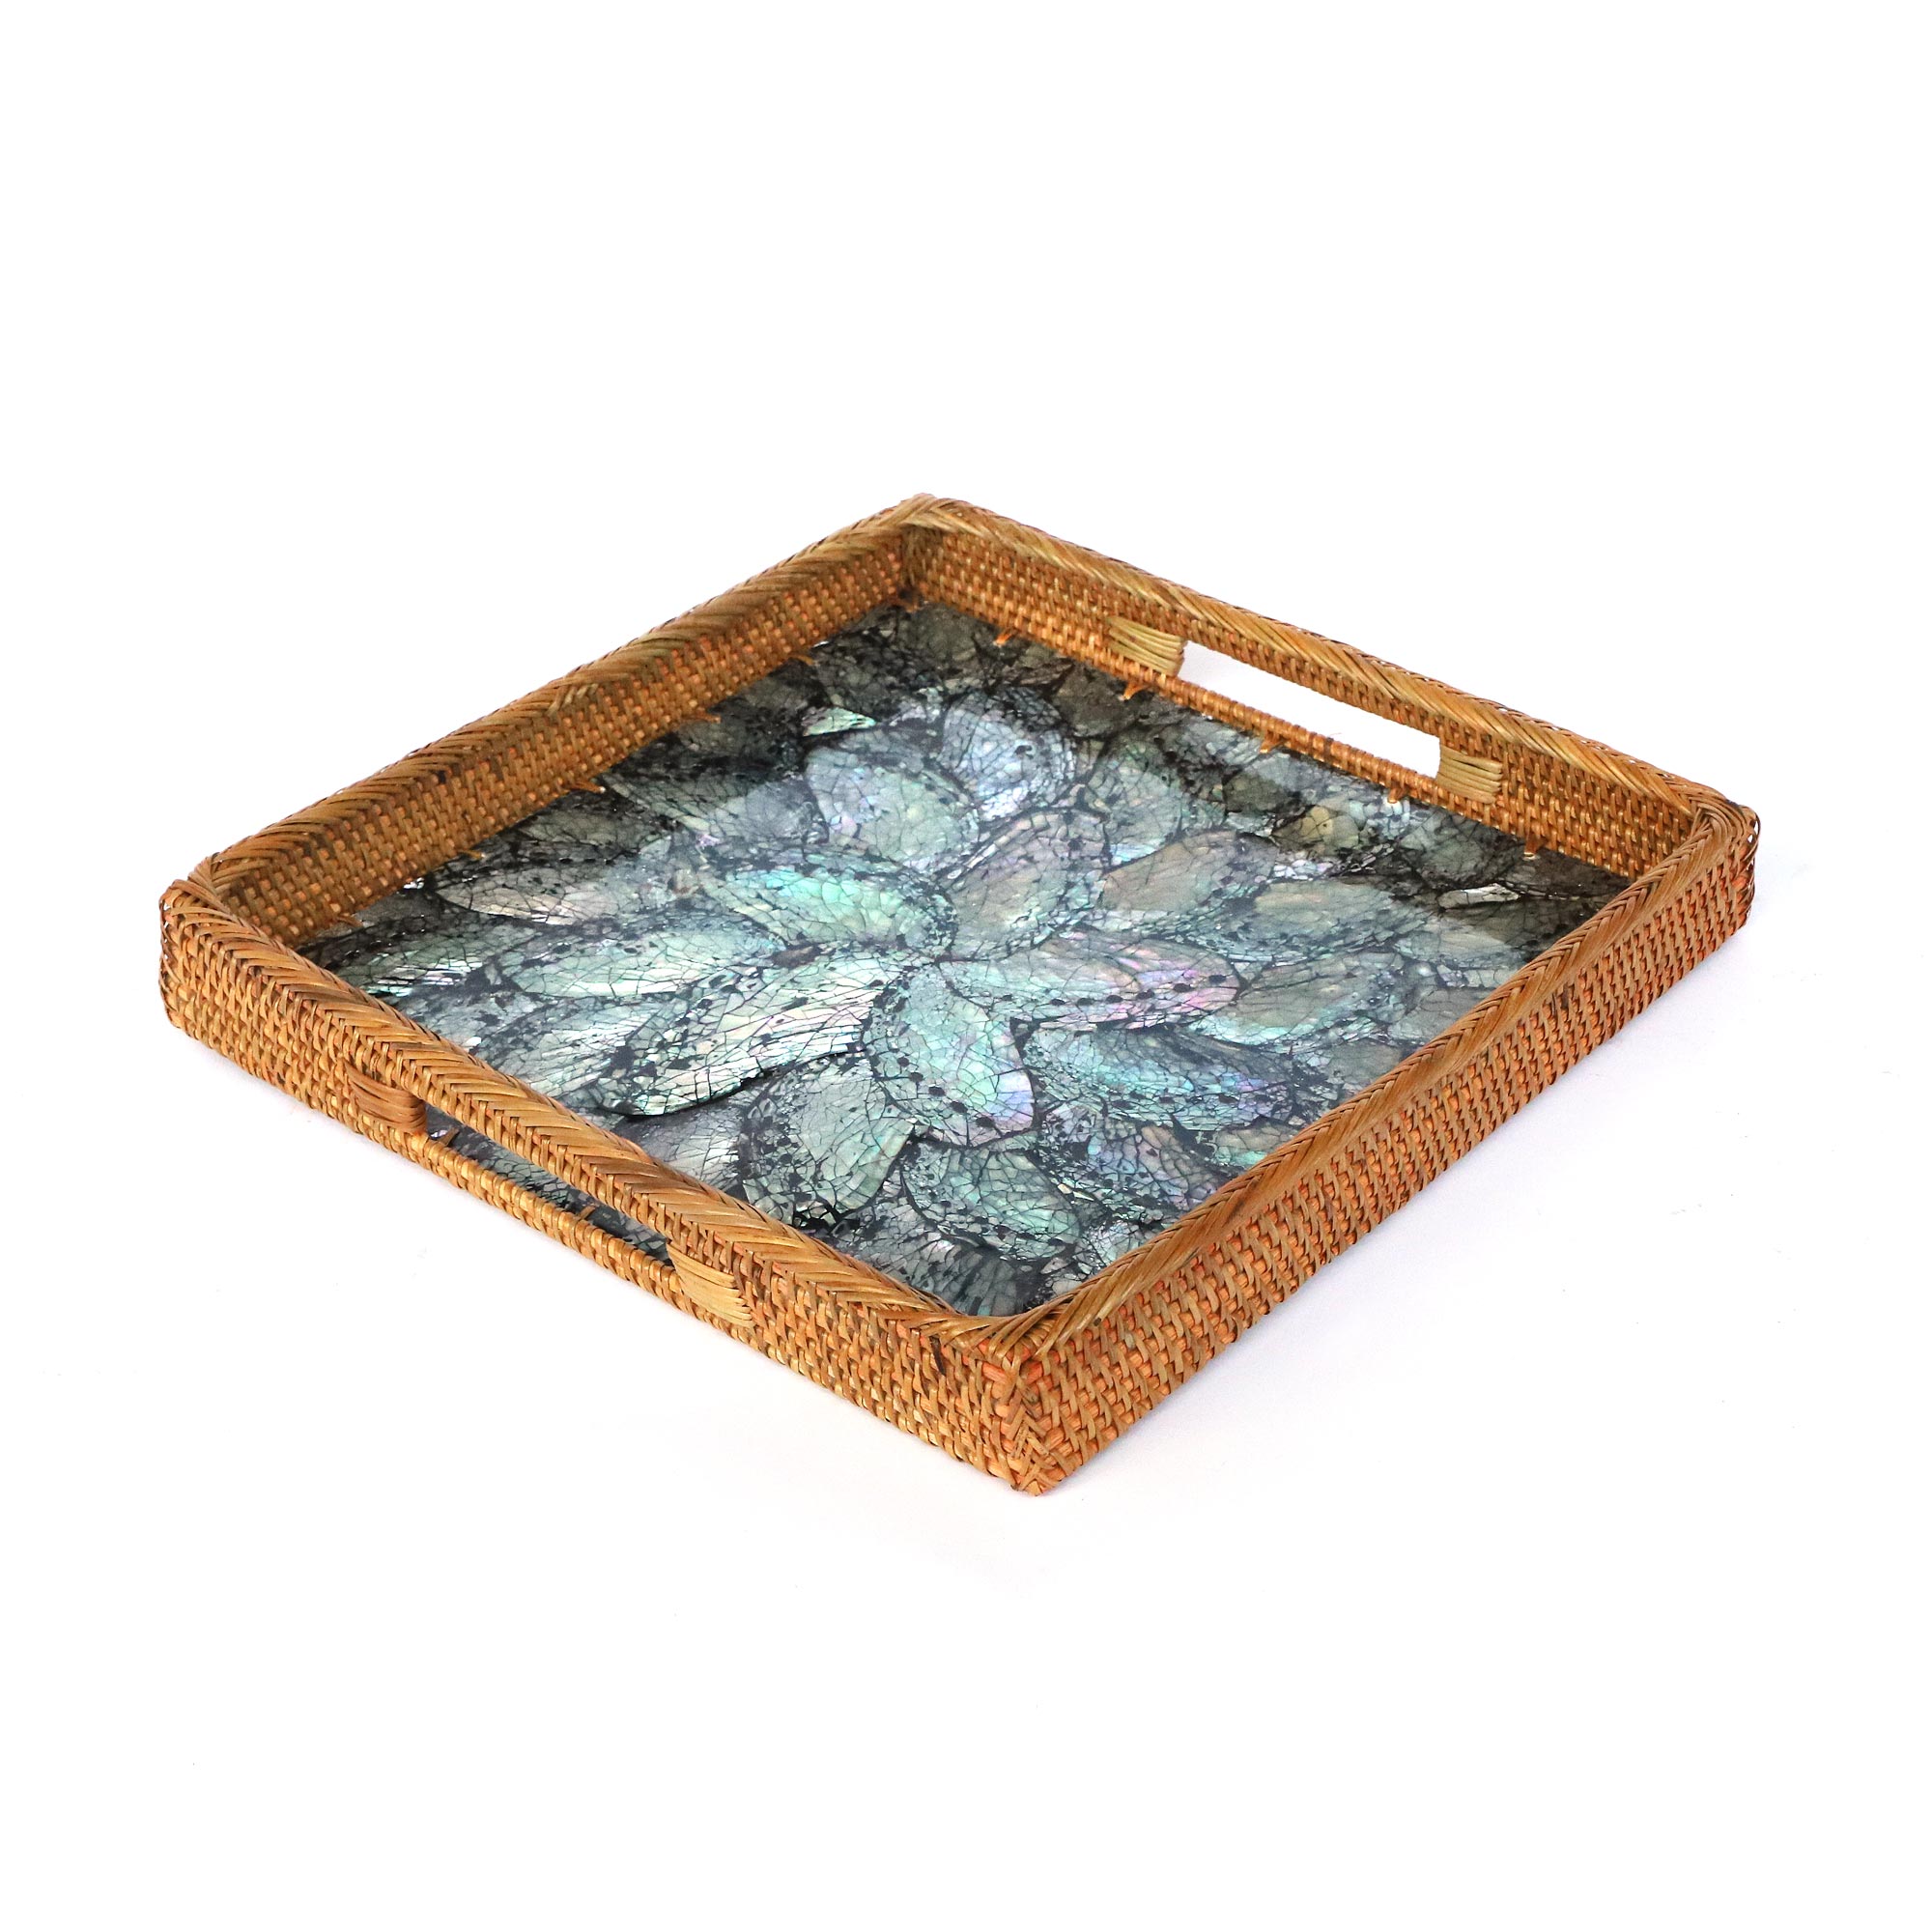 Rattan-Tablett mit Perlmutt-Boden, cm, 30 cm 39,00 30 zu L € H4 cm, B